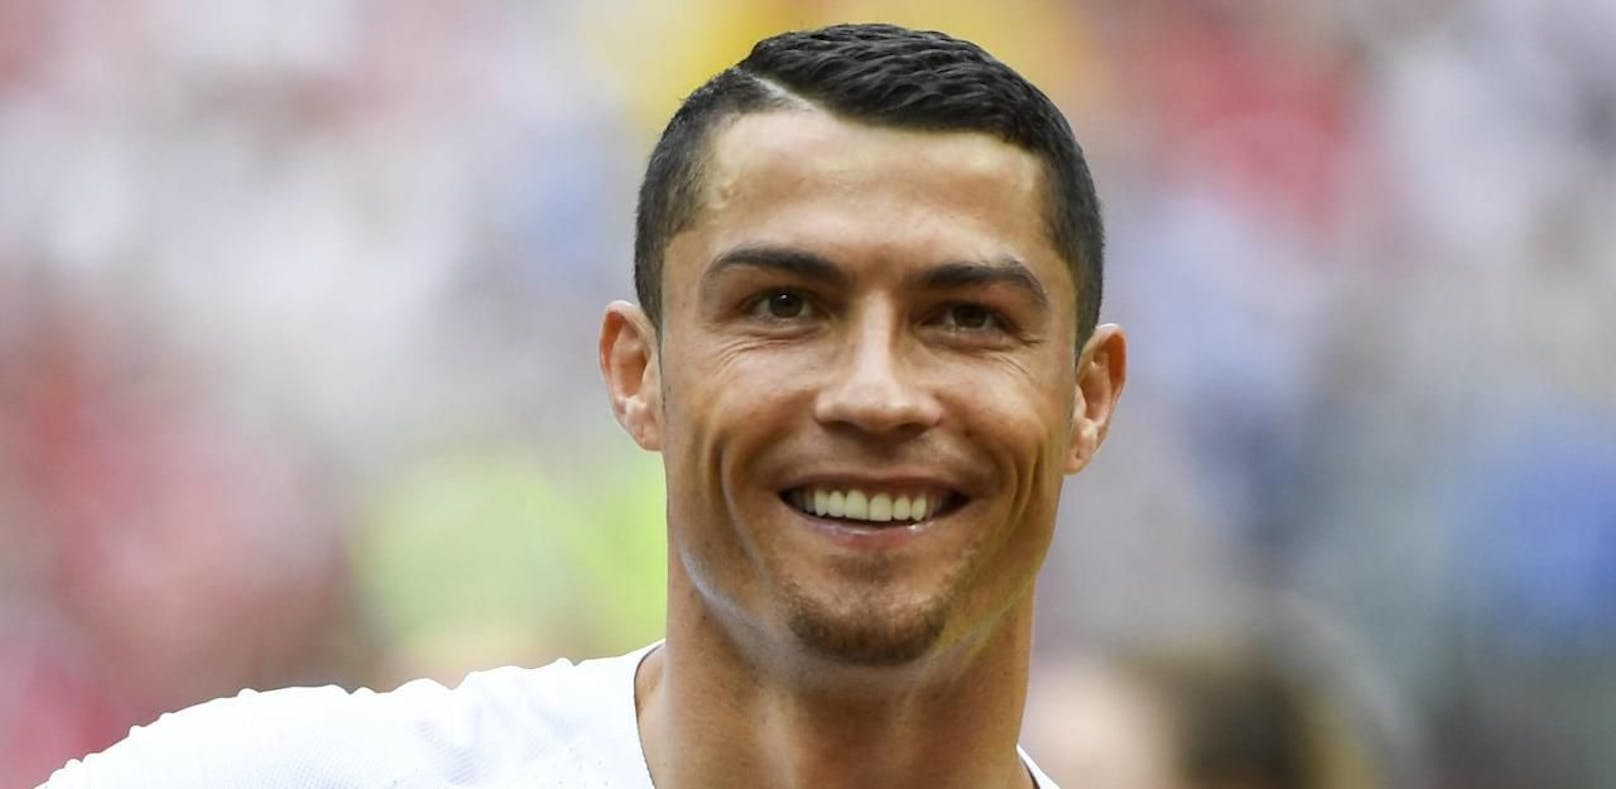 Sauna-Scherz! Das steckt hinter Ronaldos Bart